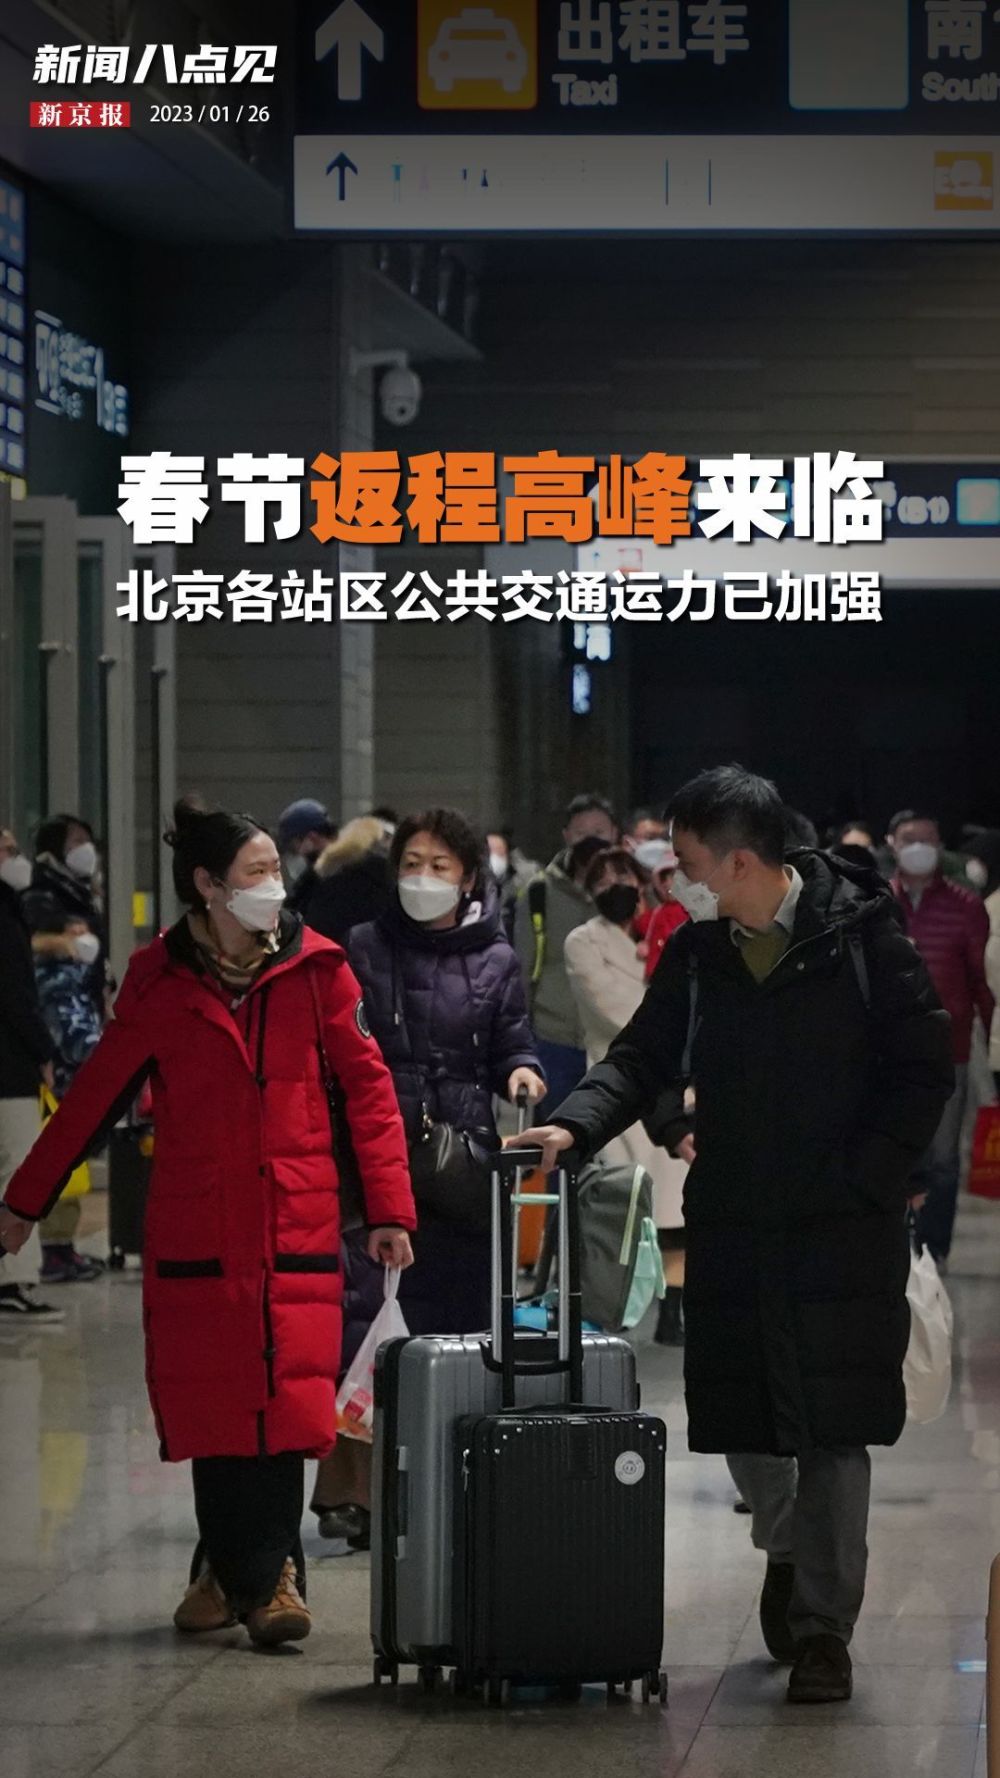 新闻8点见丨春节返程高峰来临，北京各站区公共交通运力已加强苏莱曼尼事件看美无人机作战2023已更新(今日/新华网)苏莱曼尼事件看美无人机作战